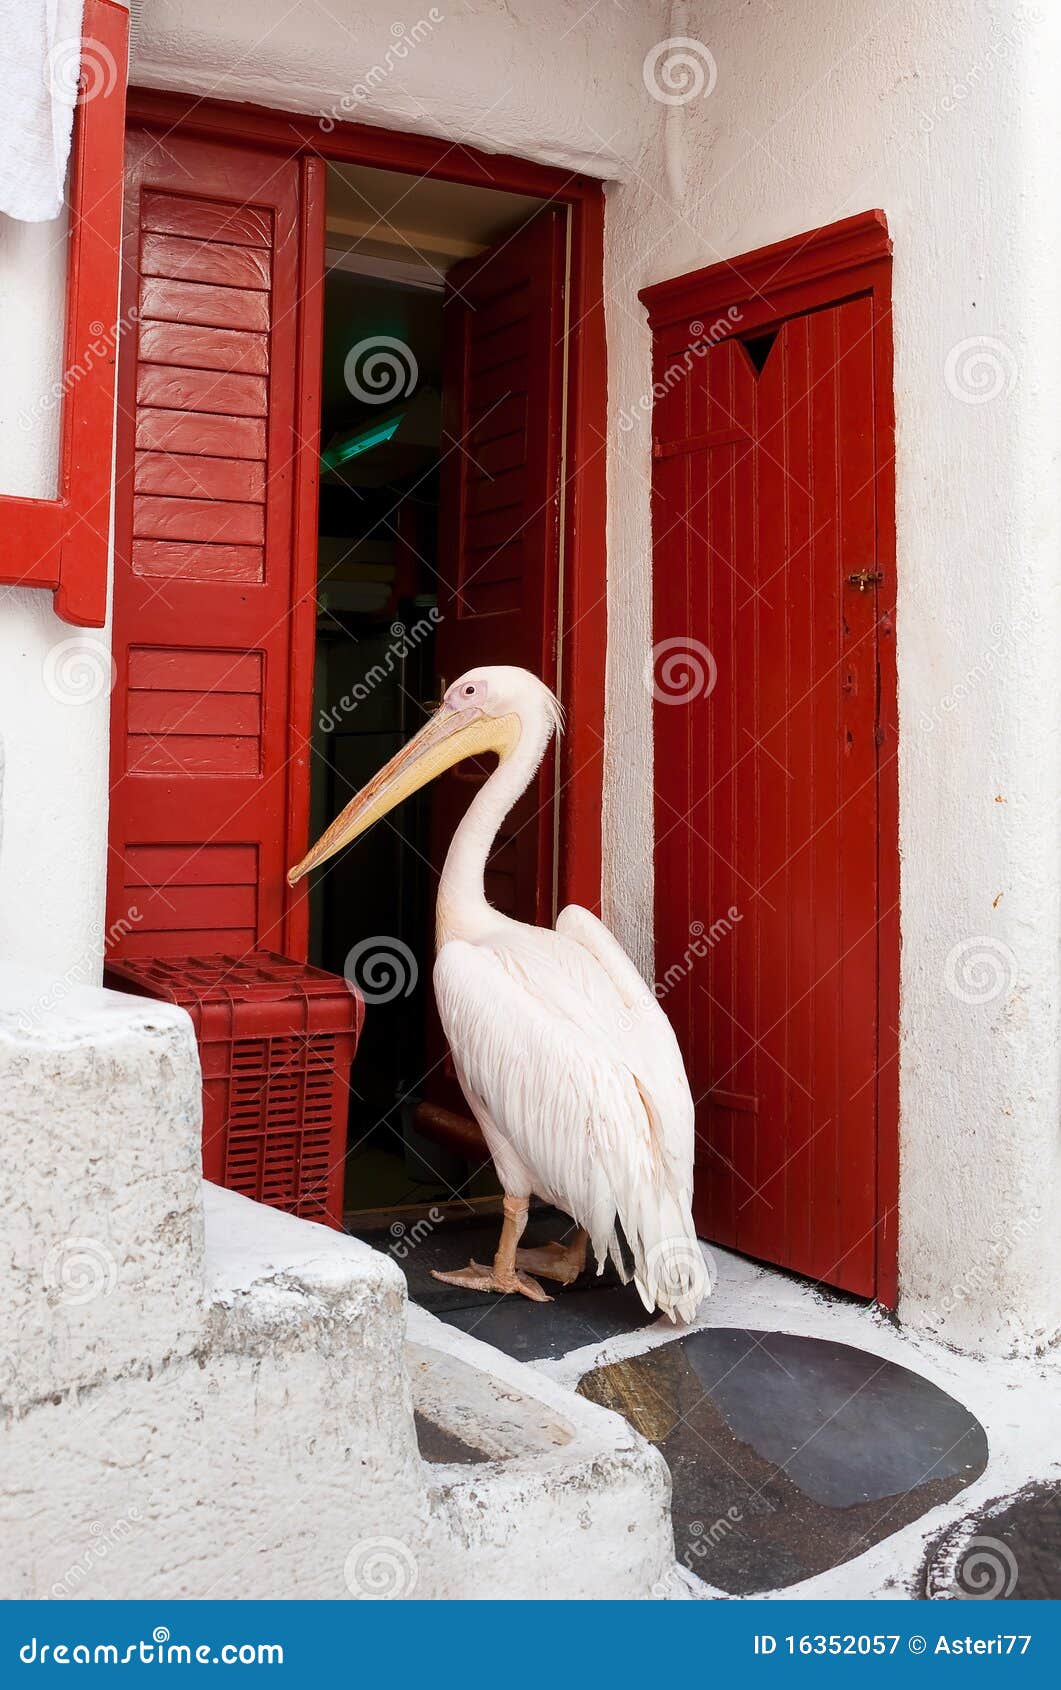 famous pelican from mykonos